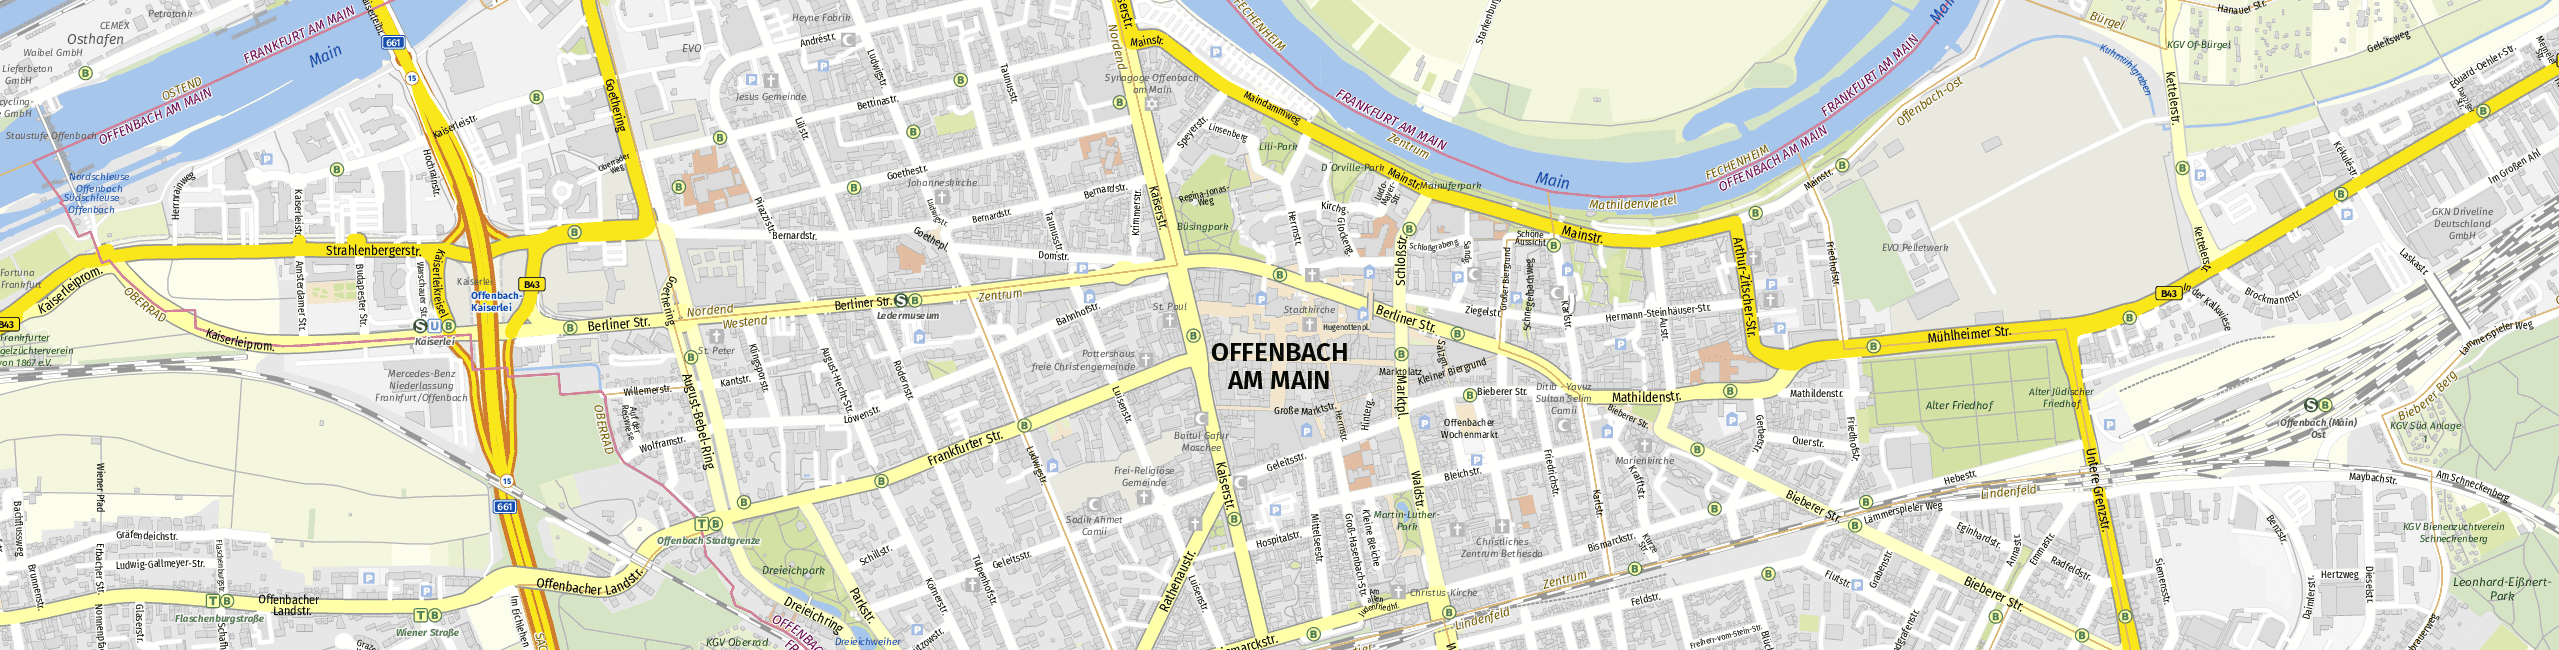 Stadtplan Offenbach am Main zum Downloaden.